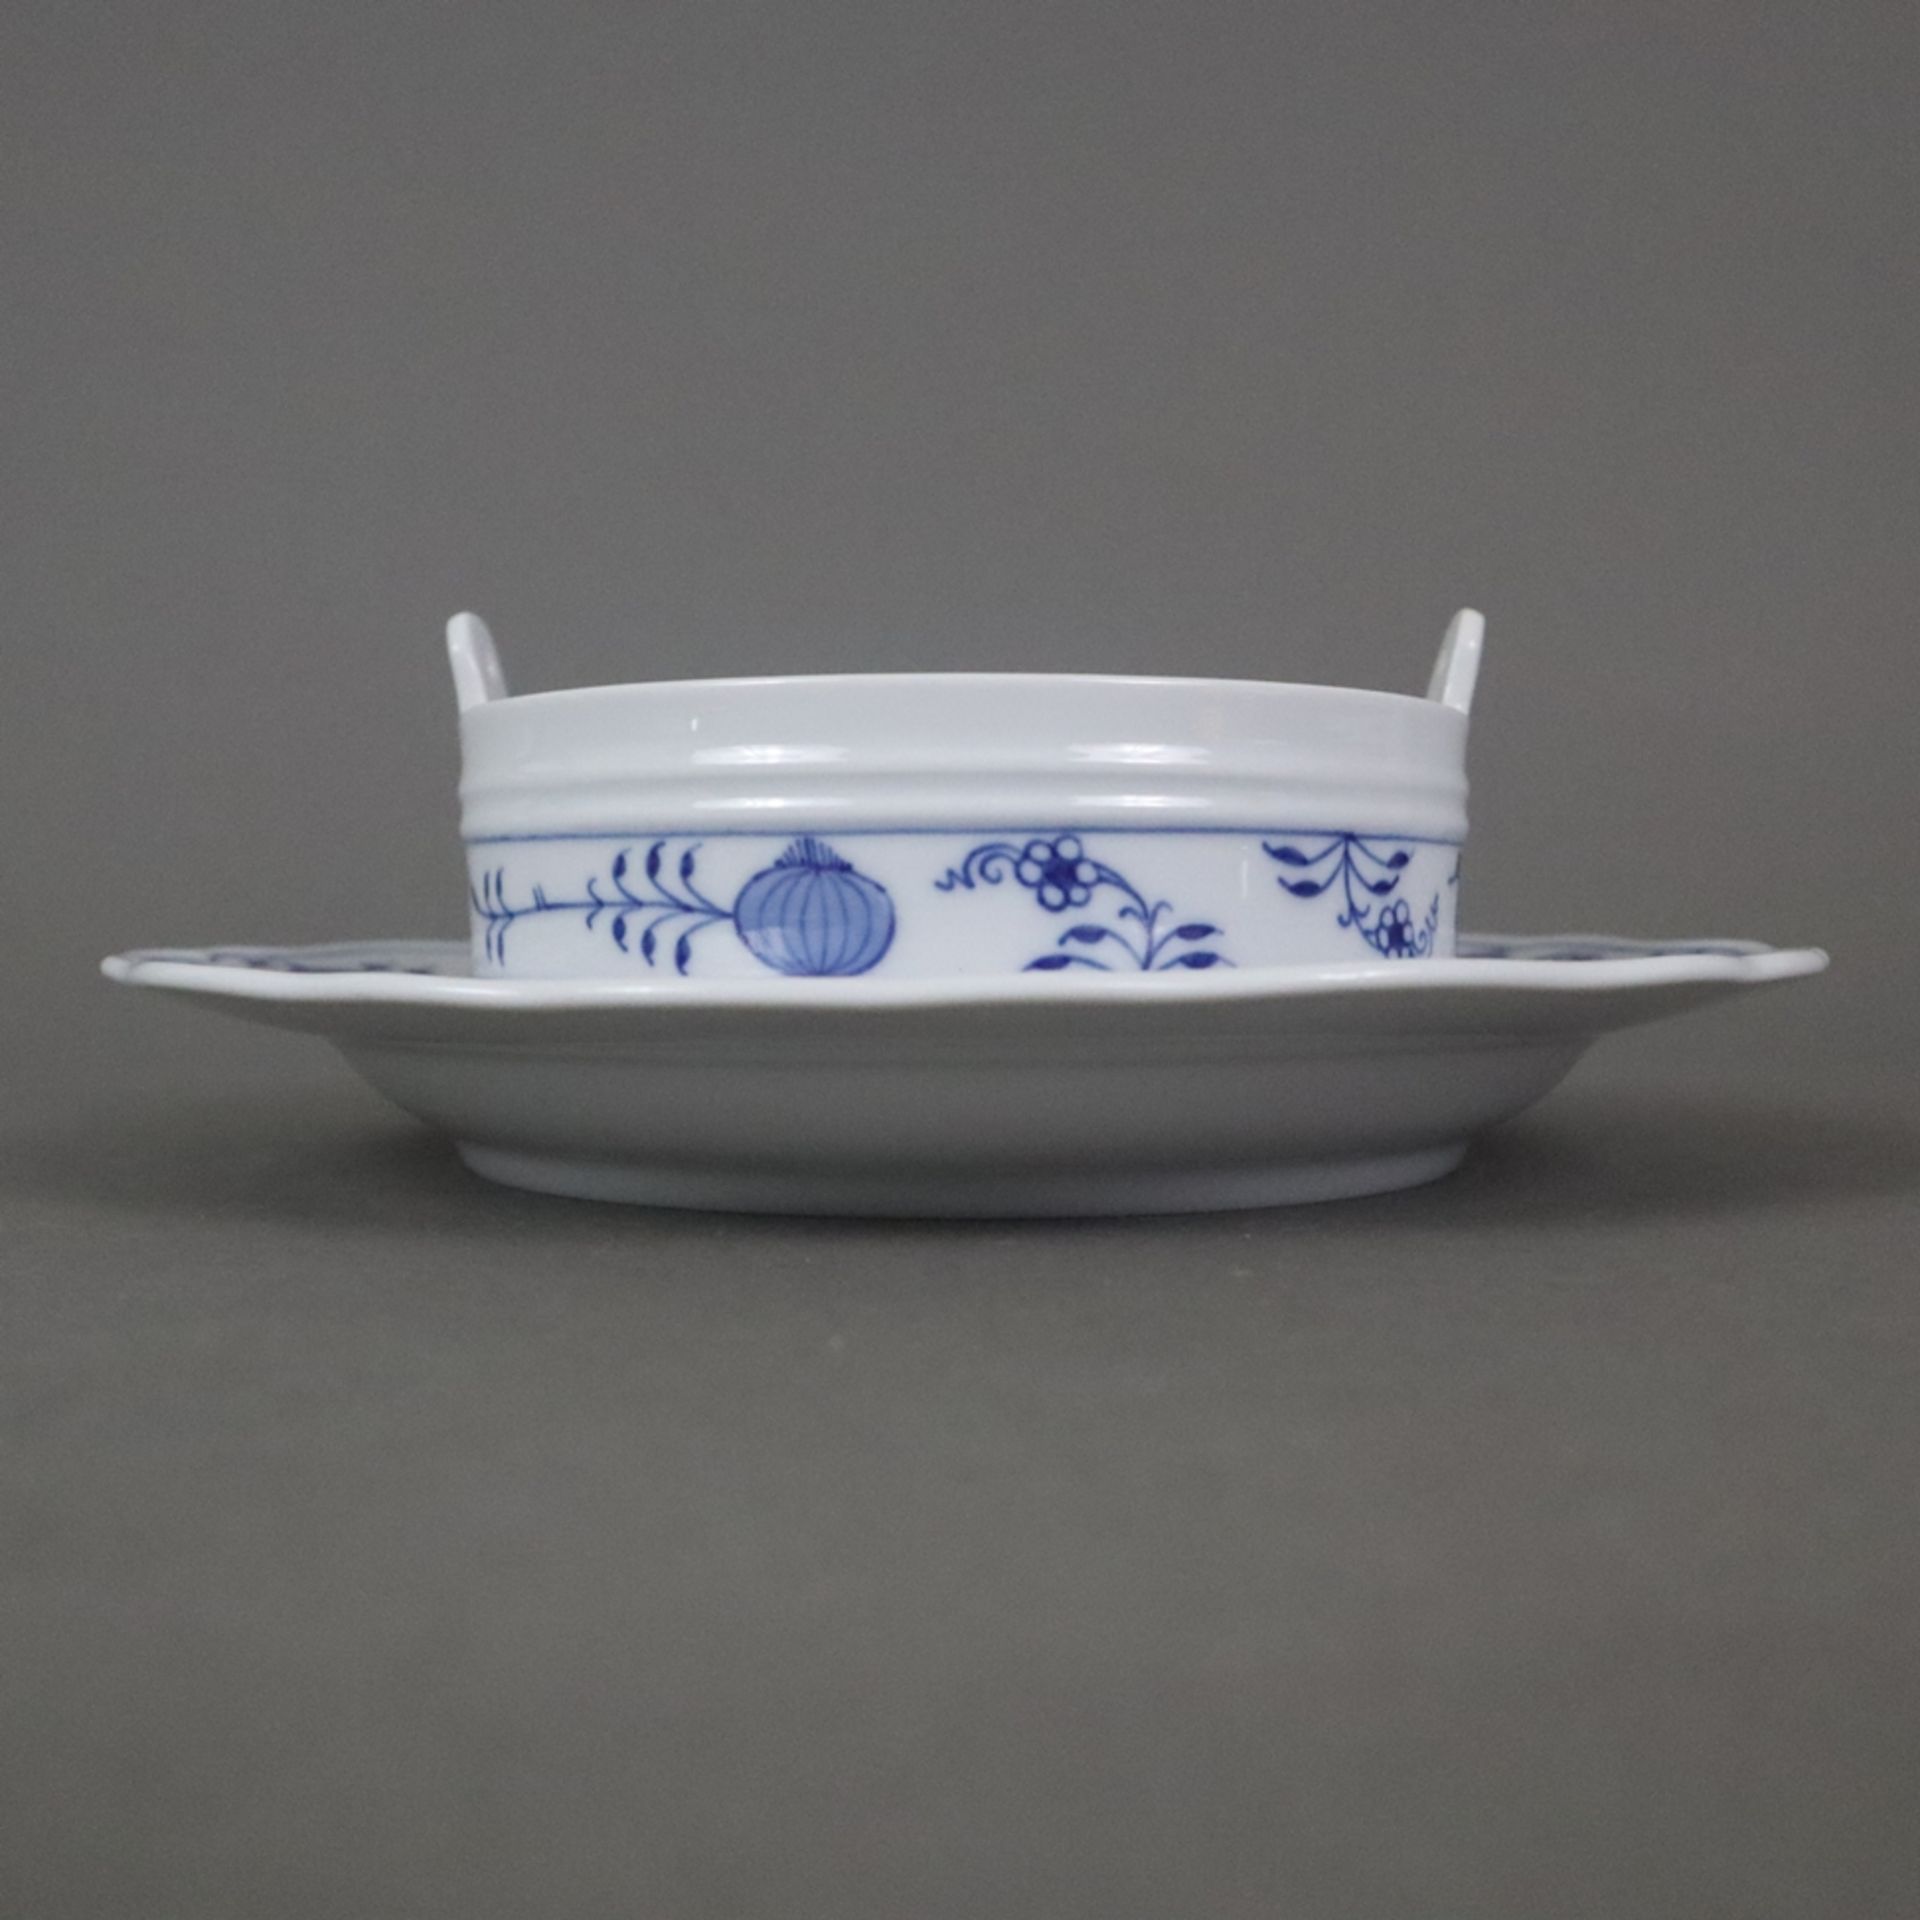 Butterdose - Meissen, Porzellan, unterglasurblaues Zwiebelmuster, Form "Neuer Ausschnitt", runde Do - Bild 5 aus 6